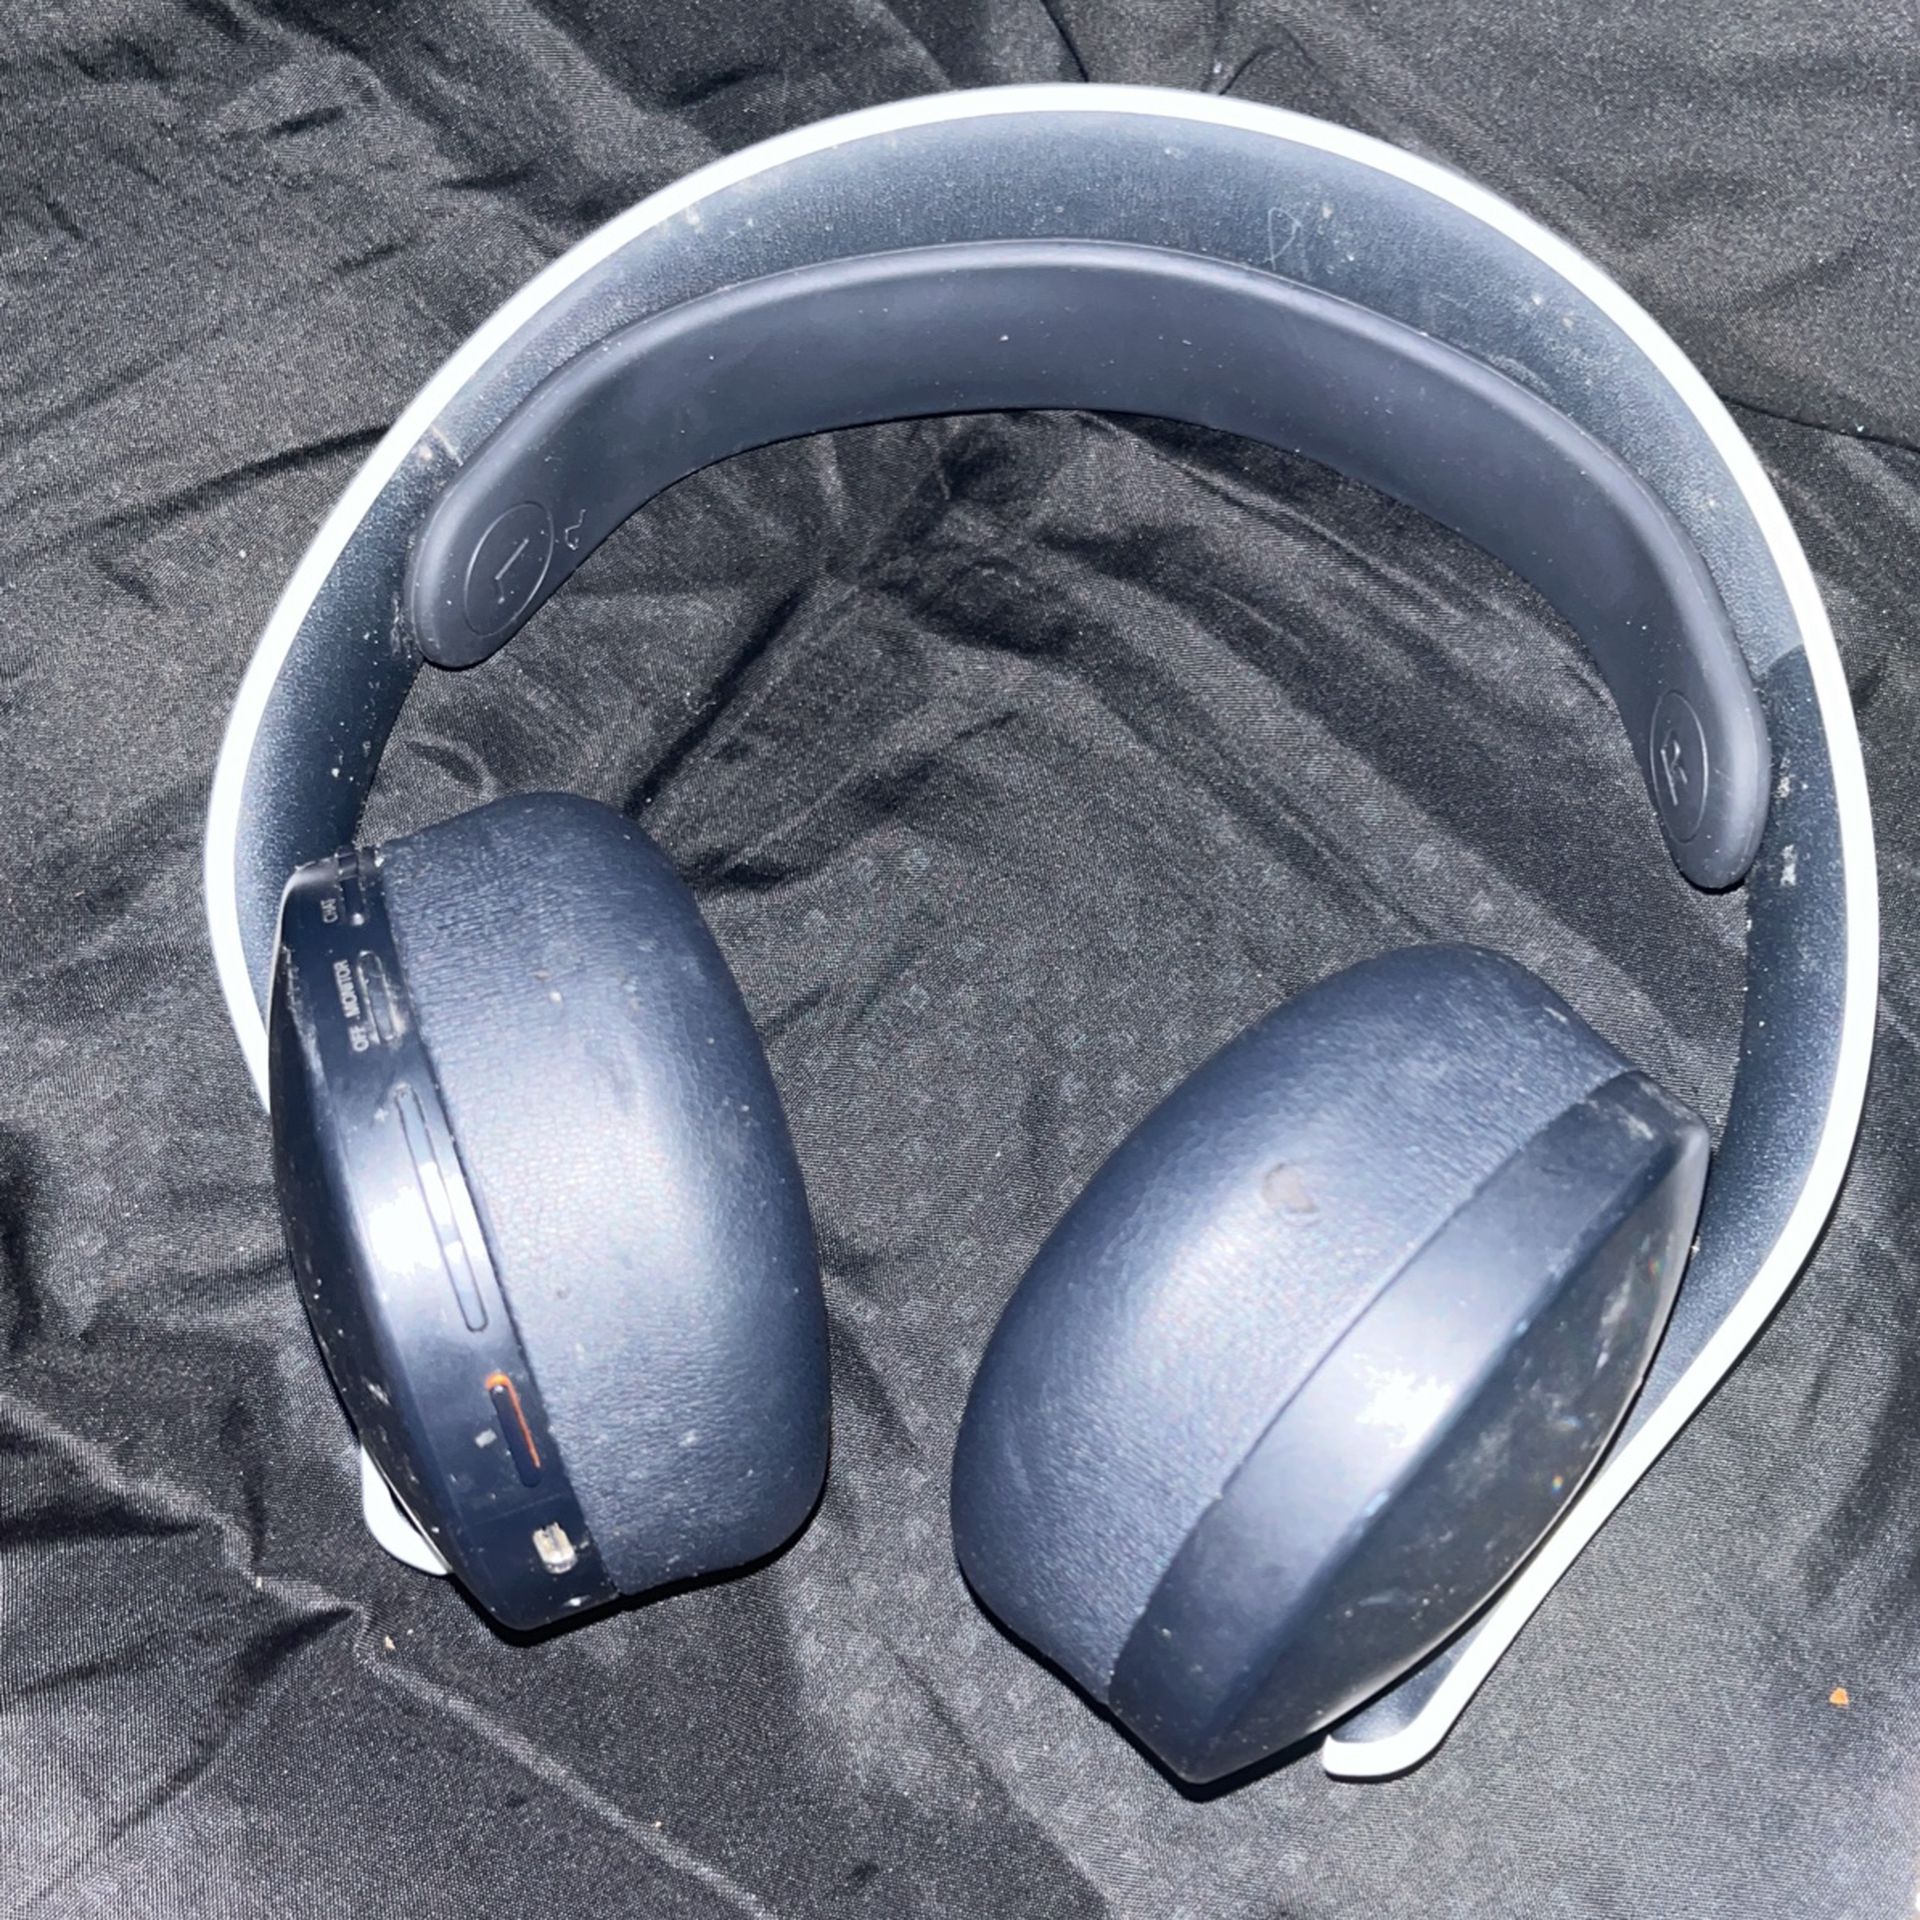 Sony Pulse Headphones